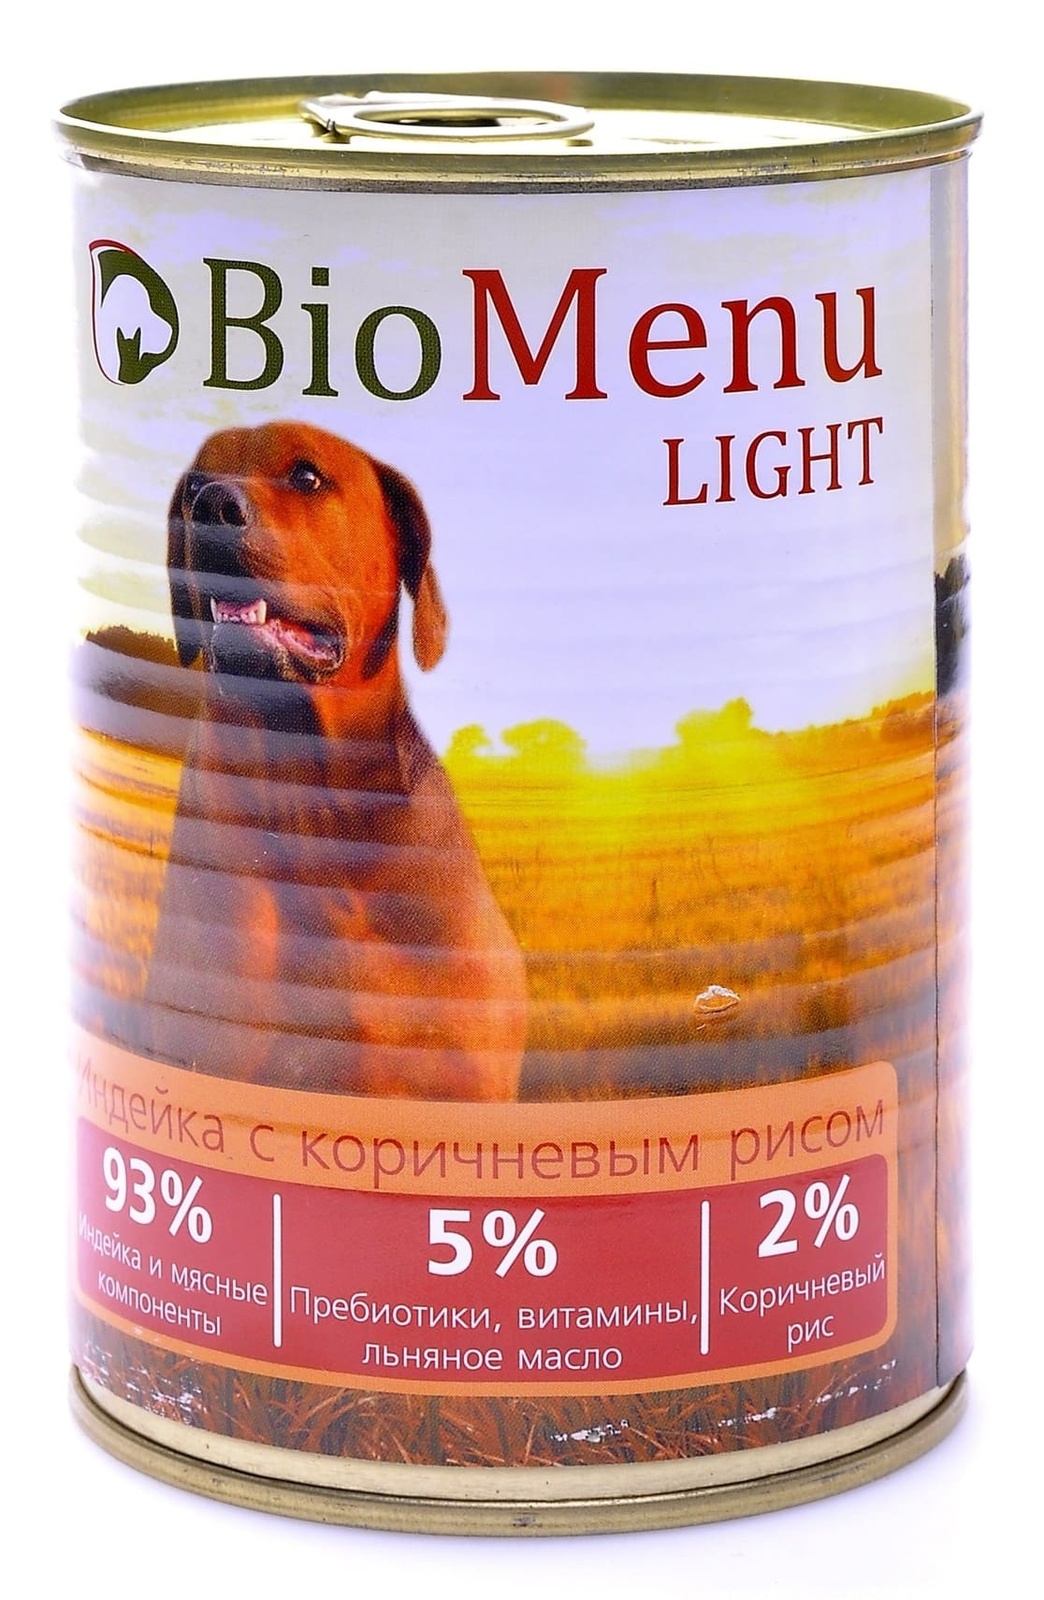 BioMenu BioMenu консервы для собак низкокалорийные с индейкой и коричневым рисом (100 г) biomenu biomenu консервы для собак цыпленок с ананасом 410 г